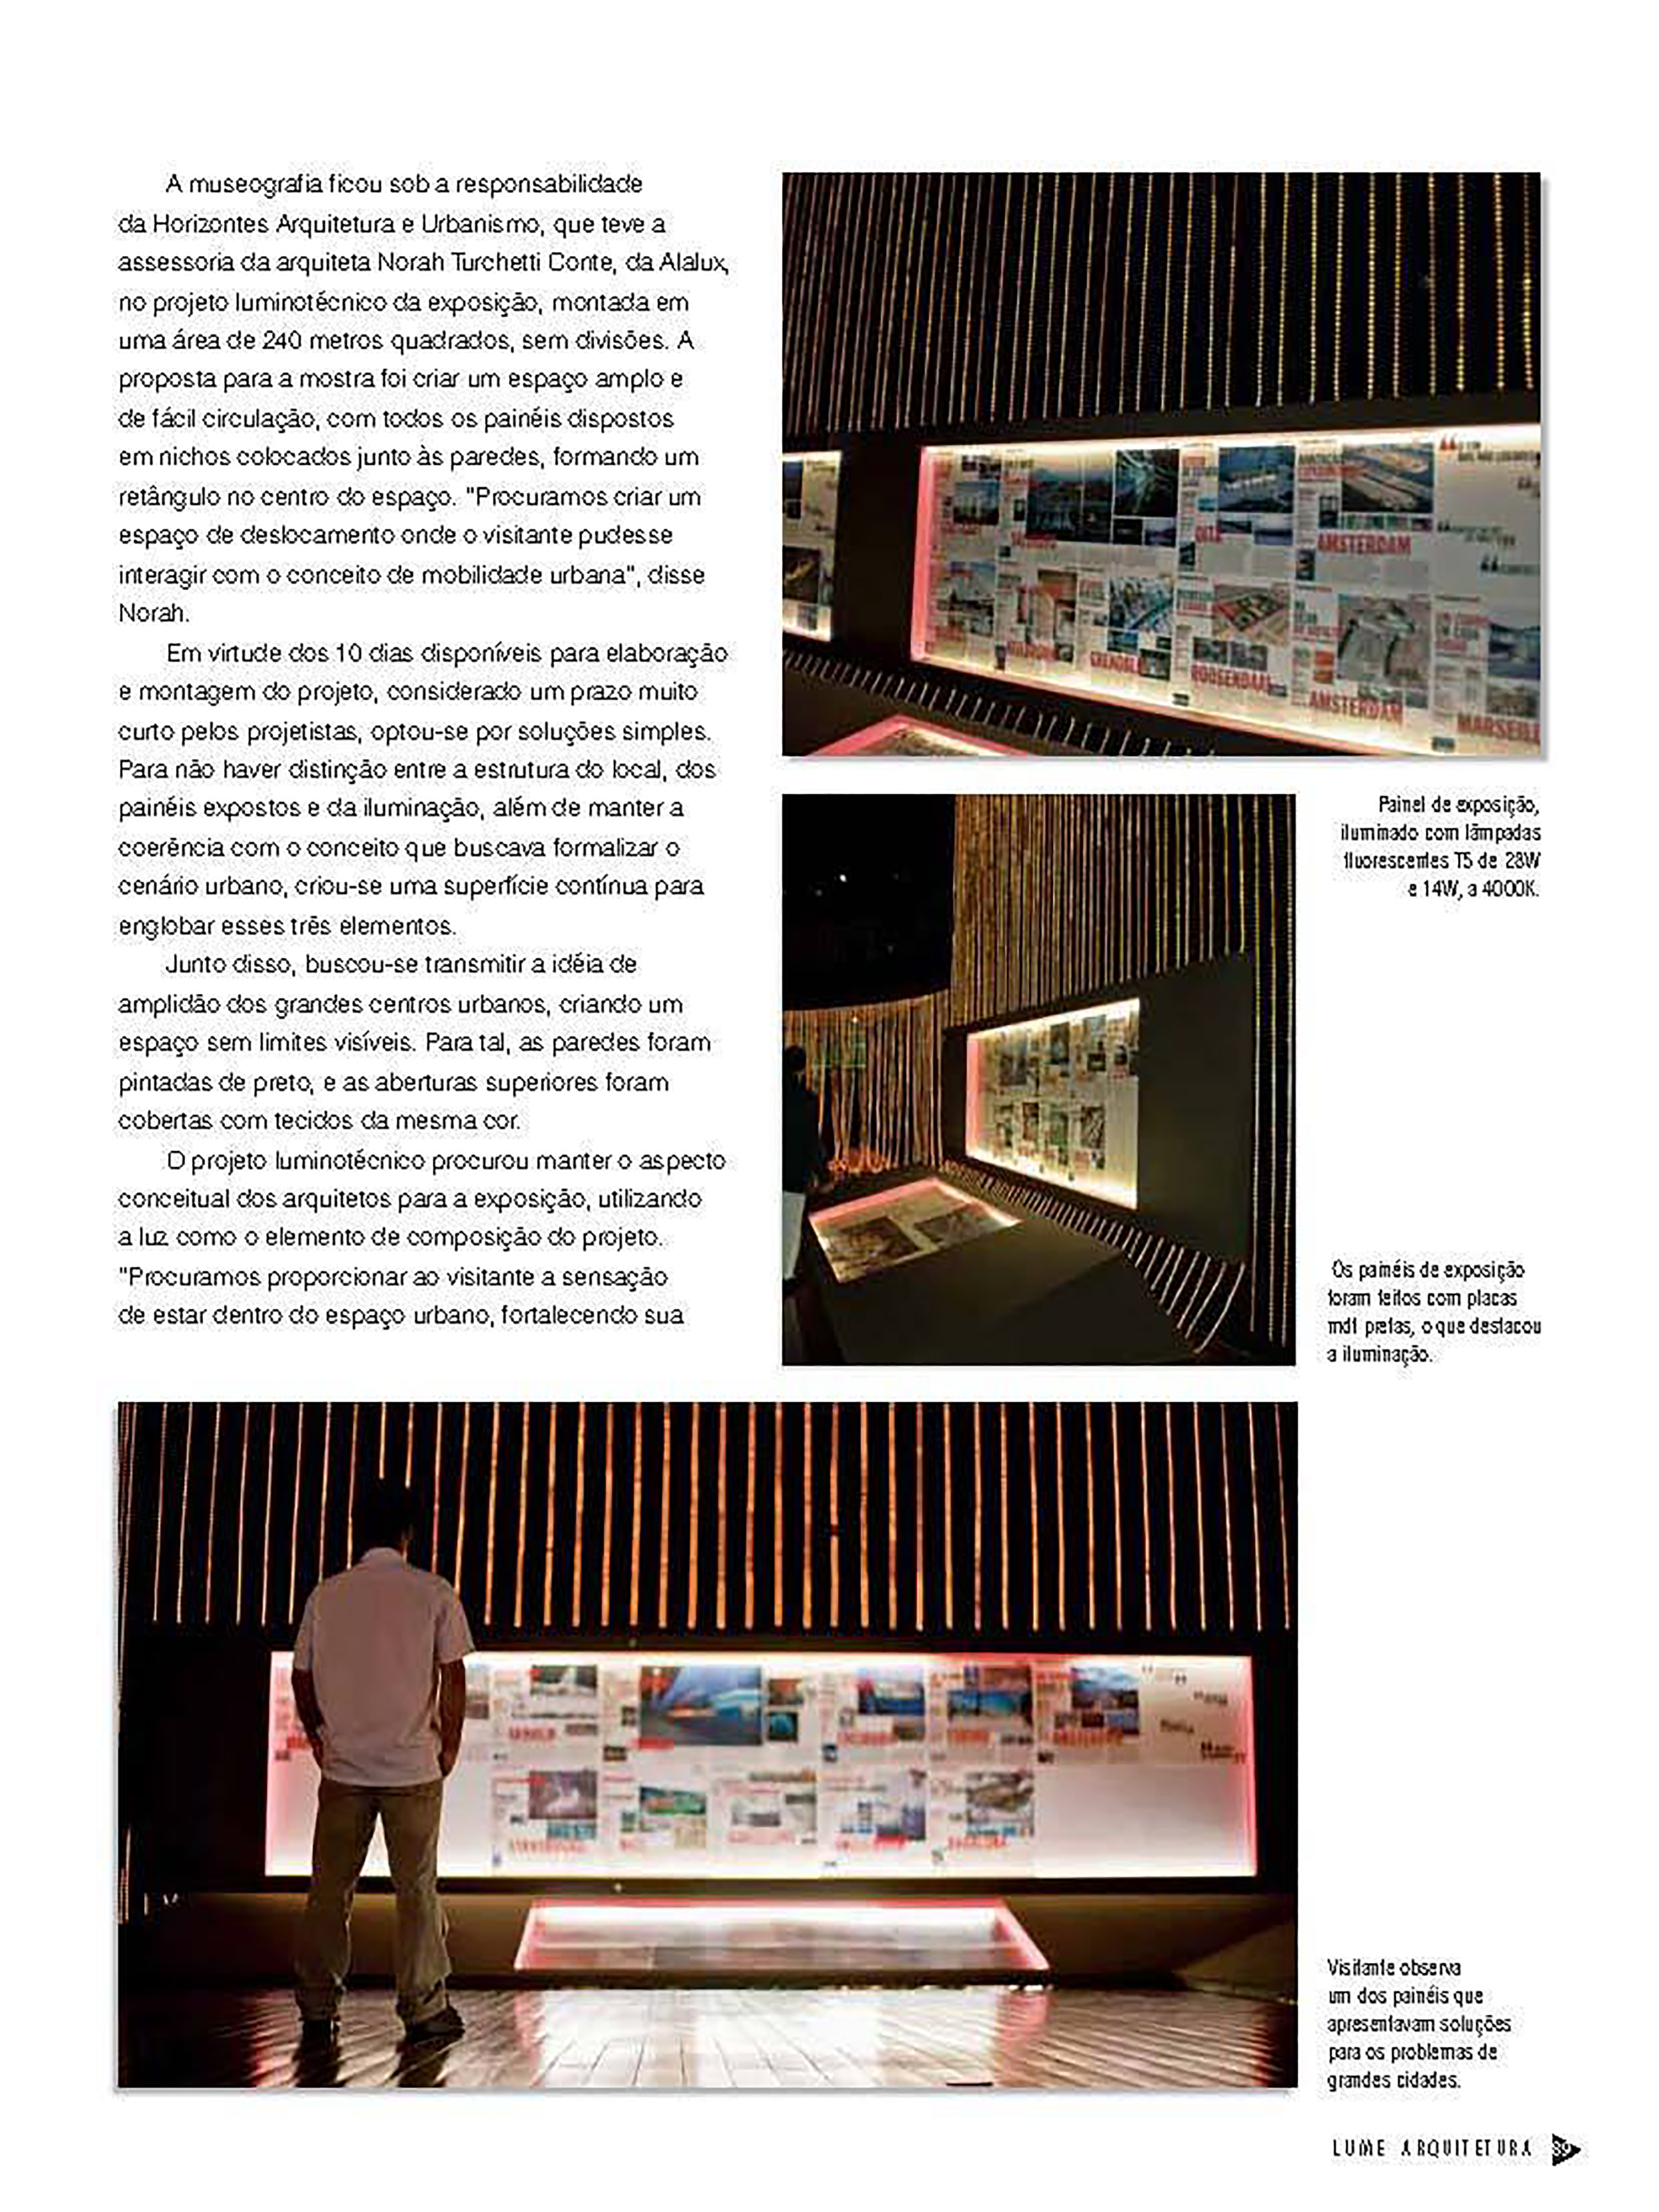  A exposição "Mova Arquitetura: Cidades e Mobilidades," realizada no Museu Histórico Abílio Barreto, em Belo Horizonte, de novembro de 2007 a janeiro de 2008, destacou-se pelo seu enfoque na mobilidade urbana. Com 45 projetos inovadores provenientes 